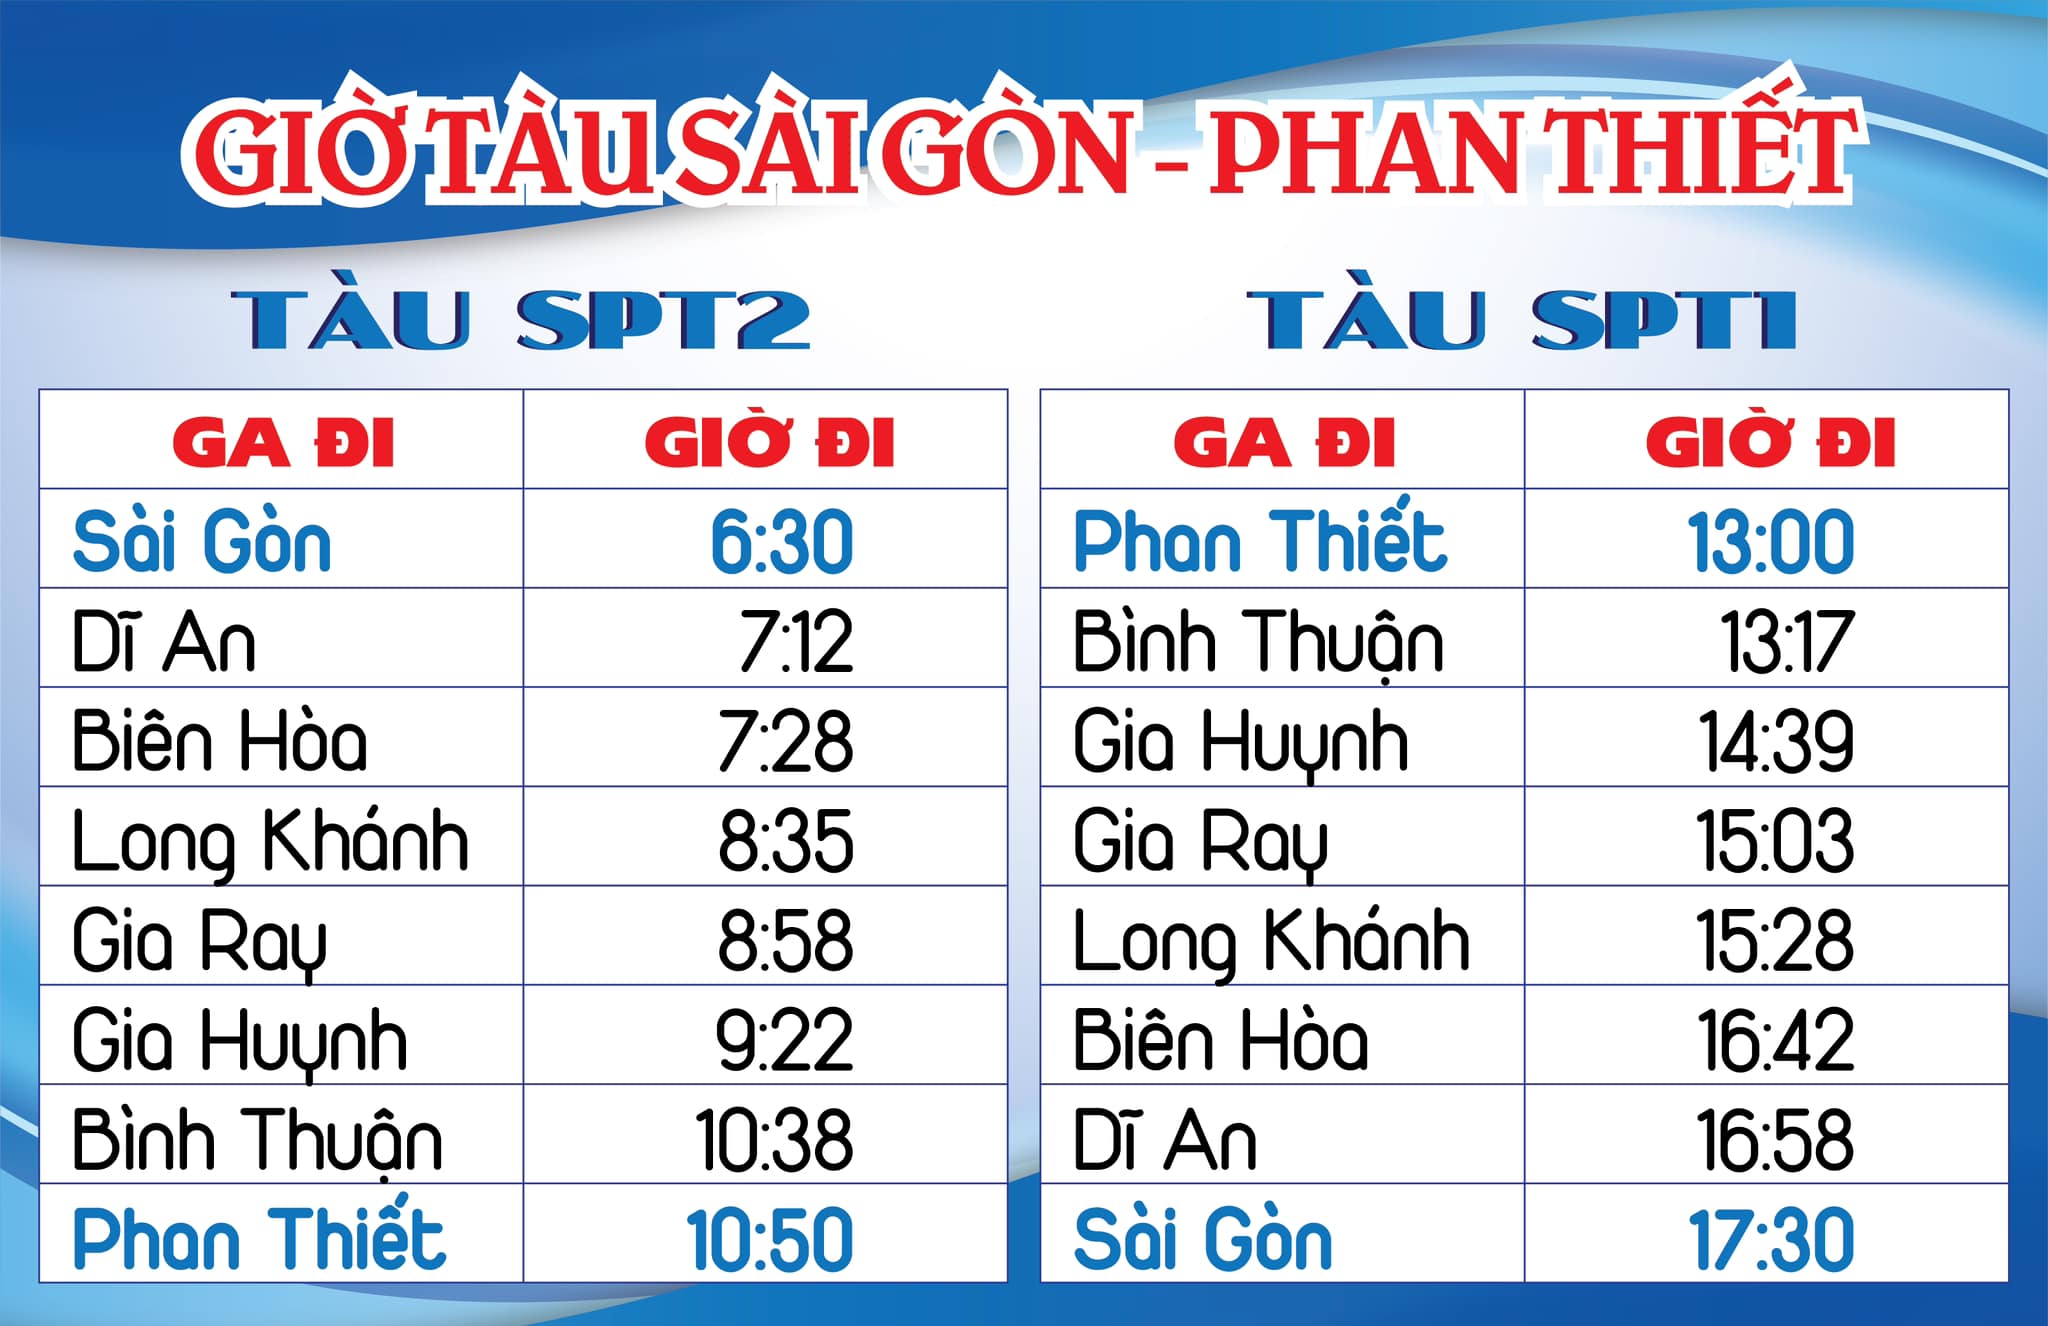 Chi tiết giờ chạy đôi tàu giữa Sài Gòn - Phan Thiết